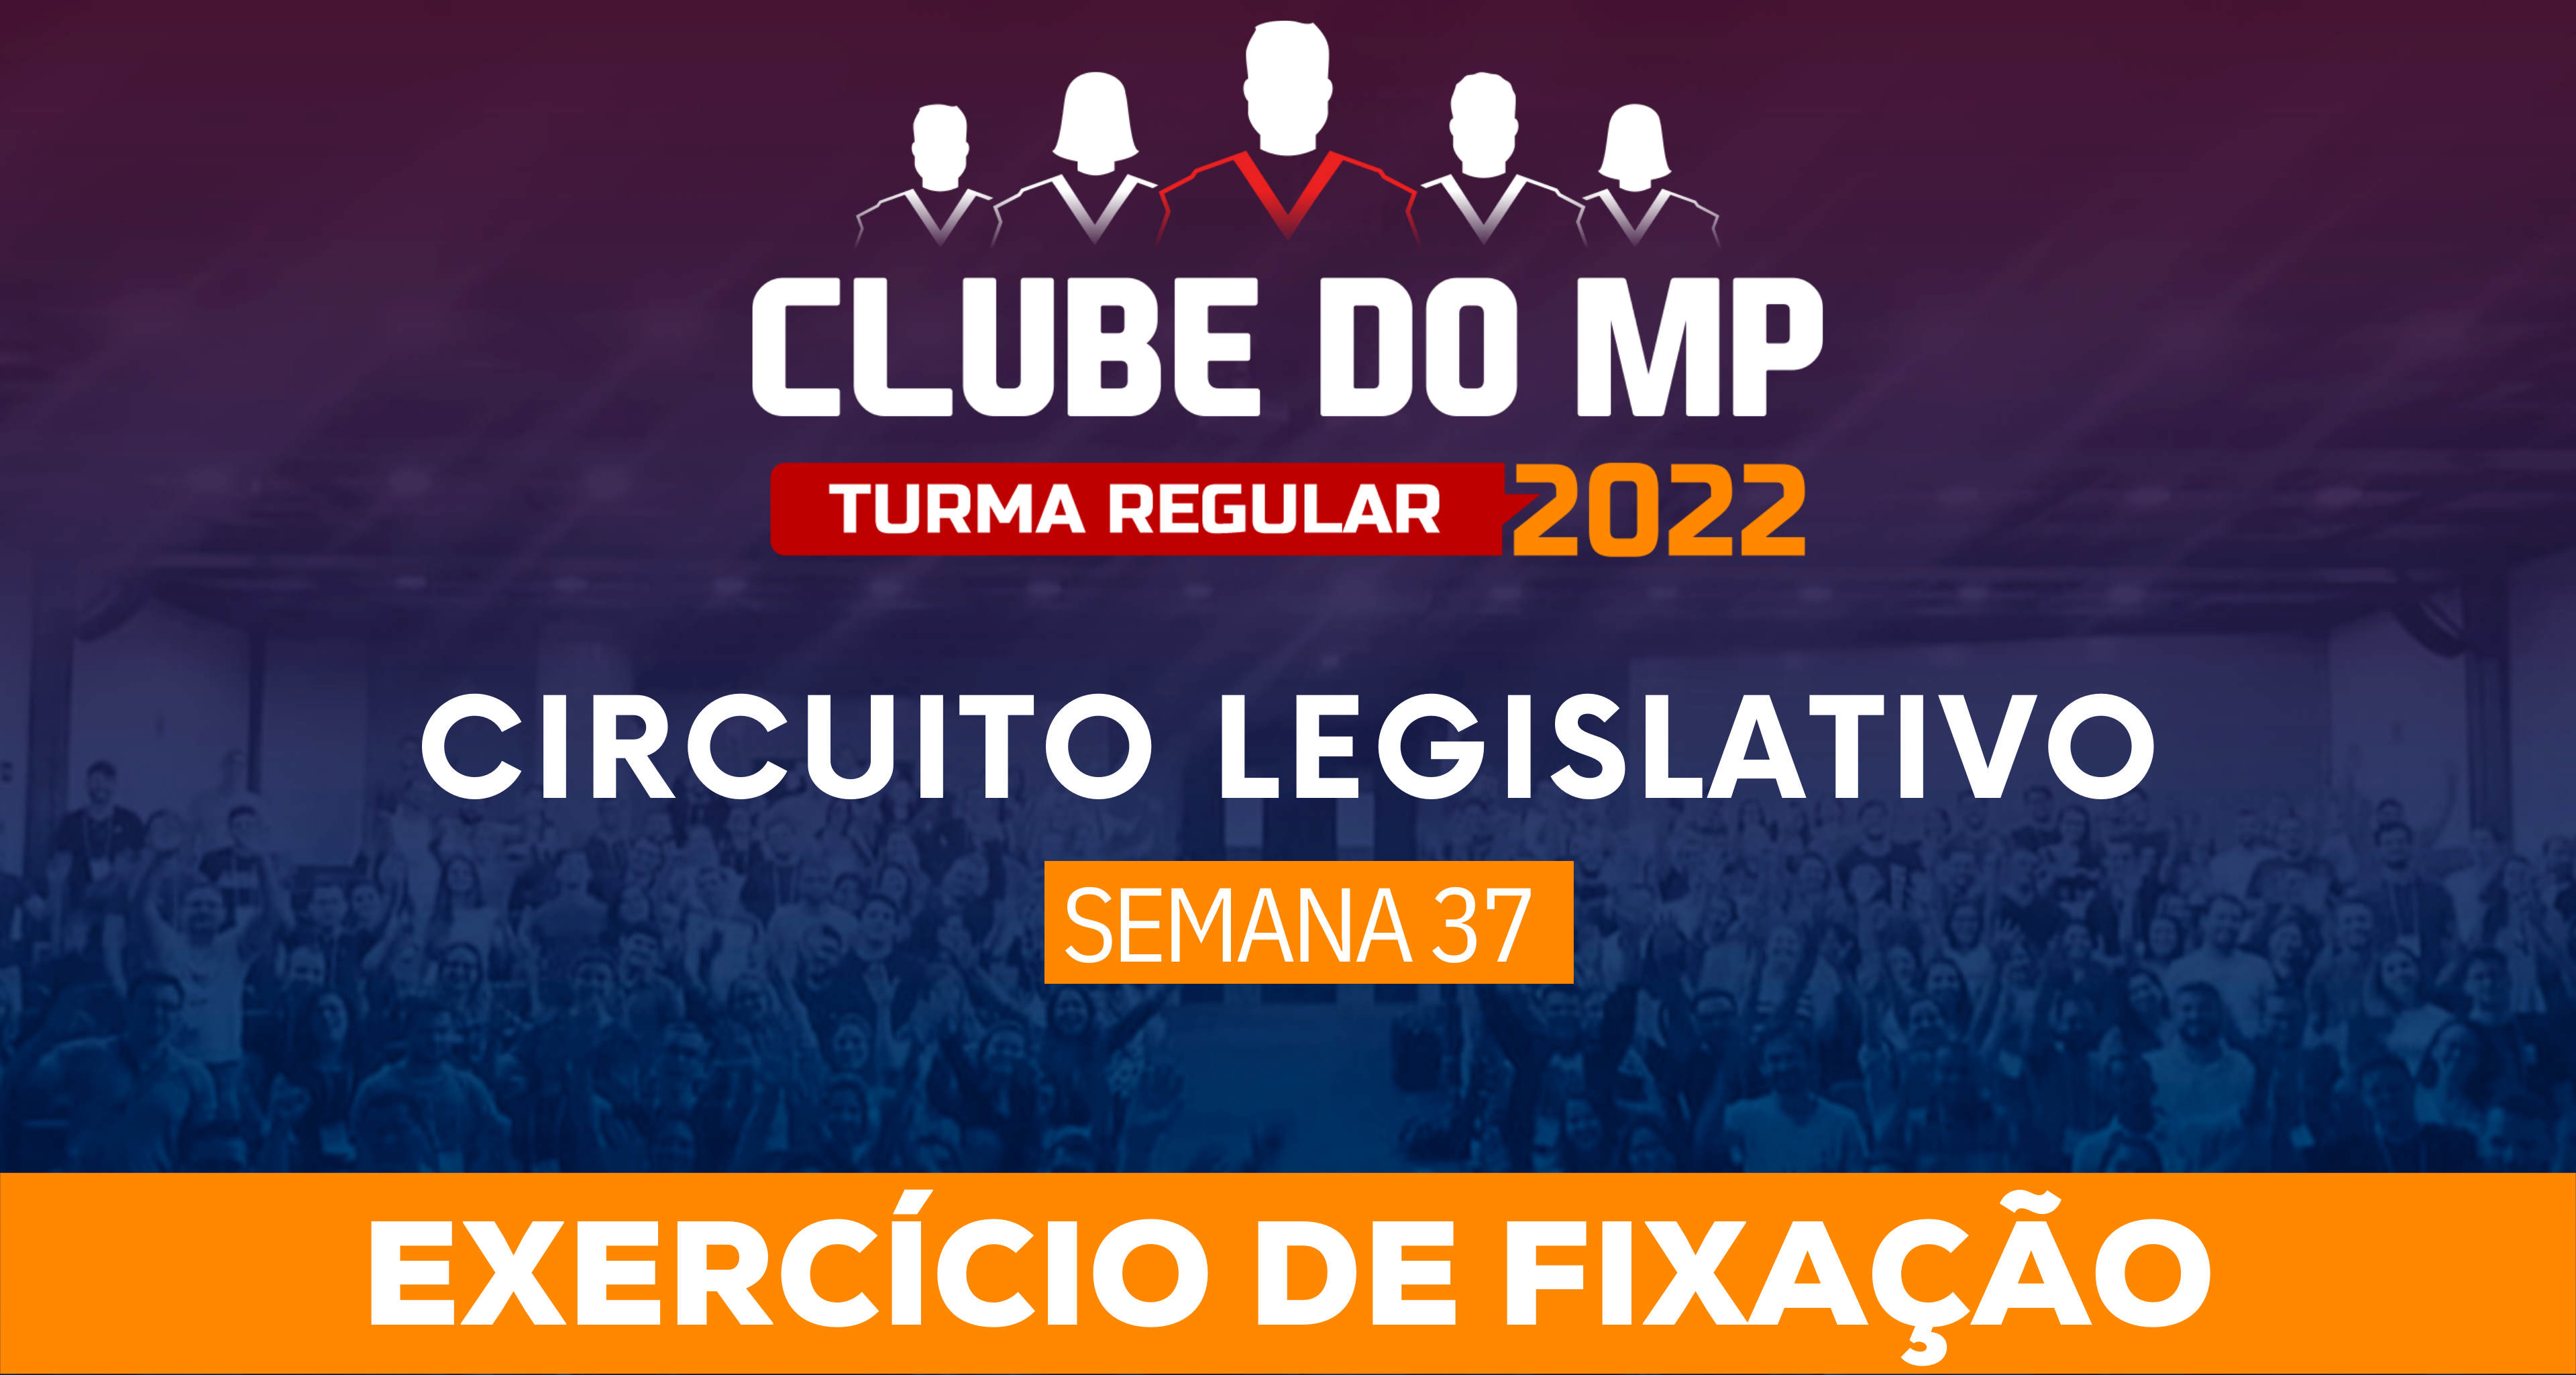 Circuito Legislativo 2022.1 (Clube do MP - Semana 37)